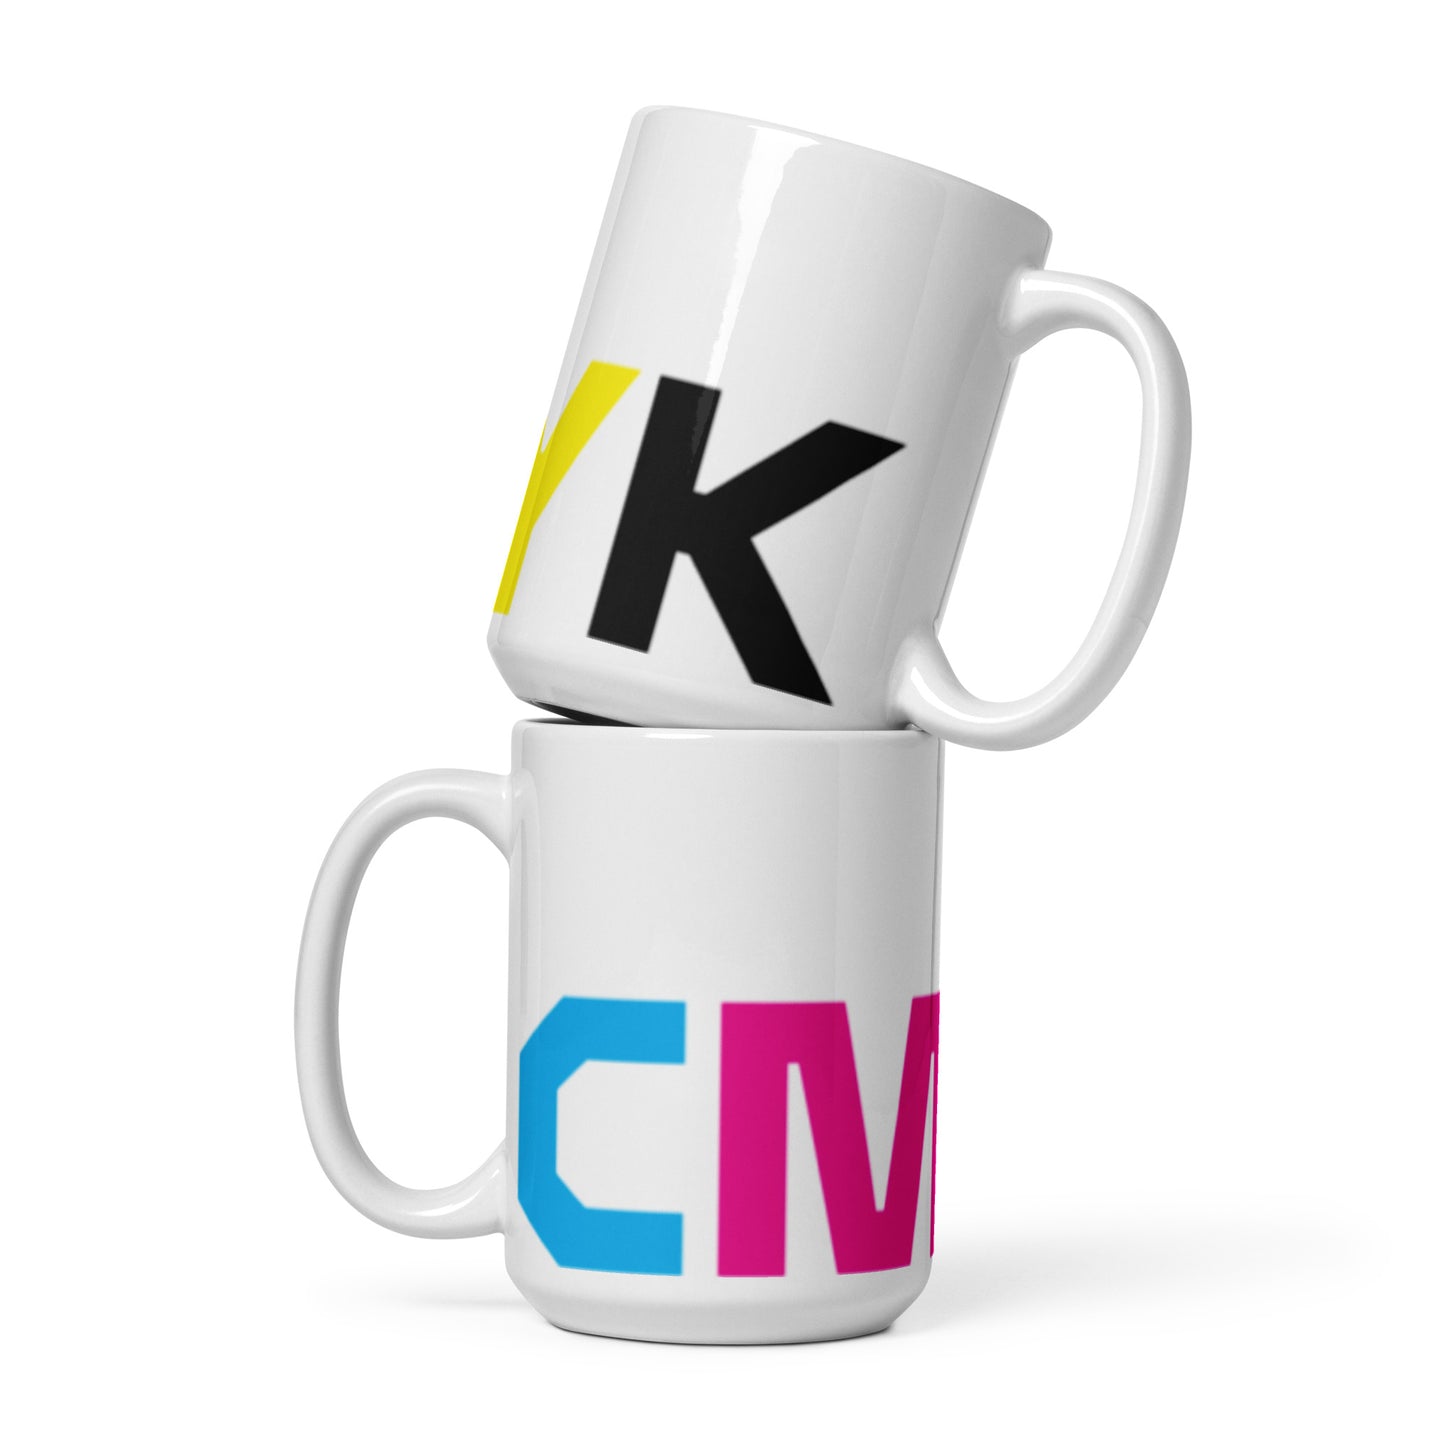 CMYK White glossy mug